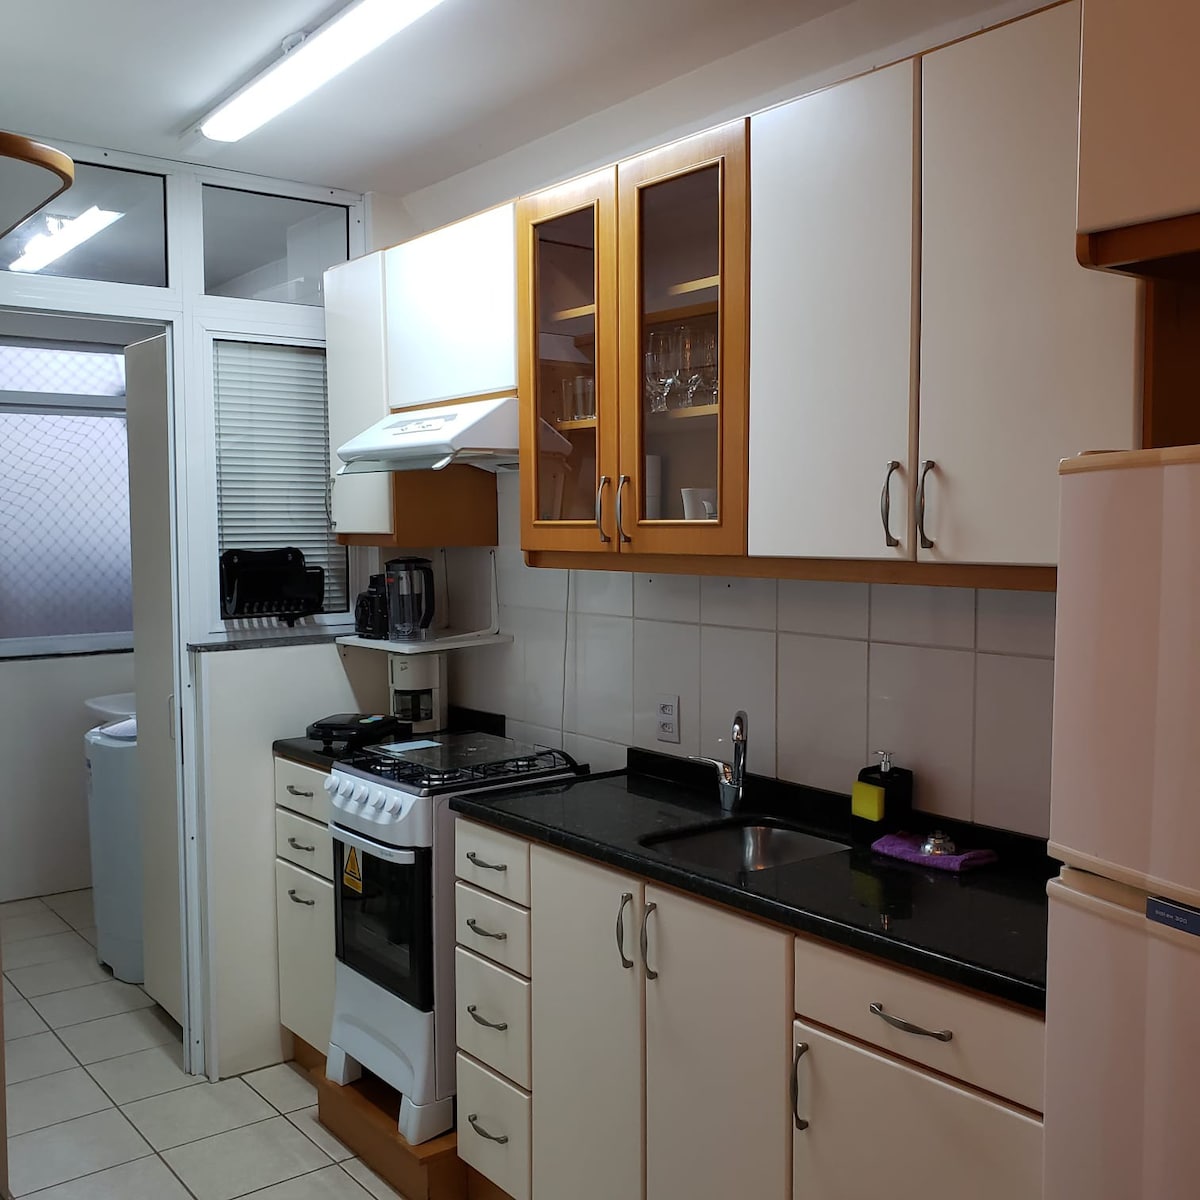 圣莱奥波尔多（ Sao Leopoldo c车库）公寓地理位置优越